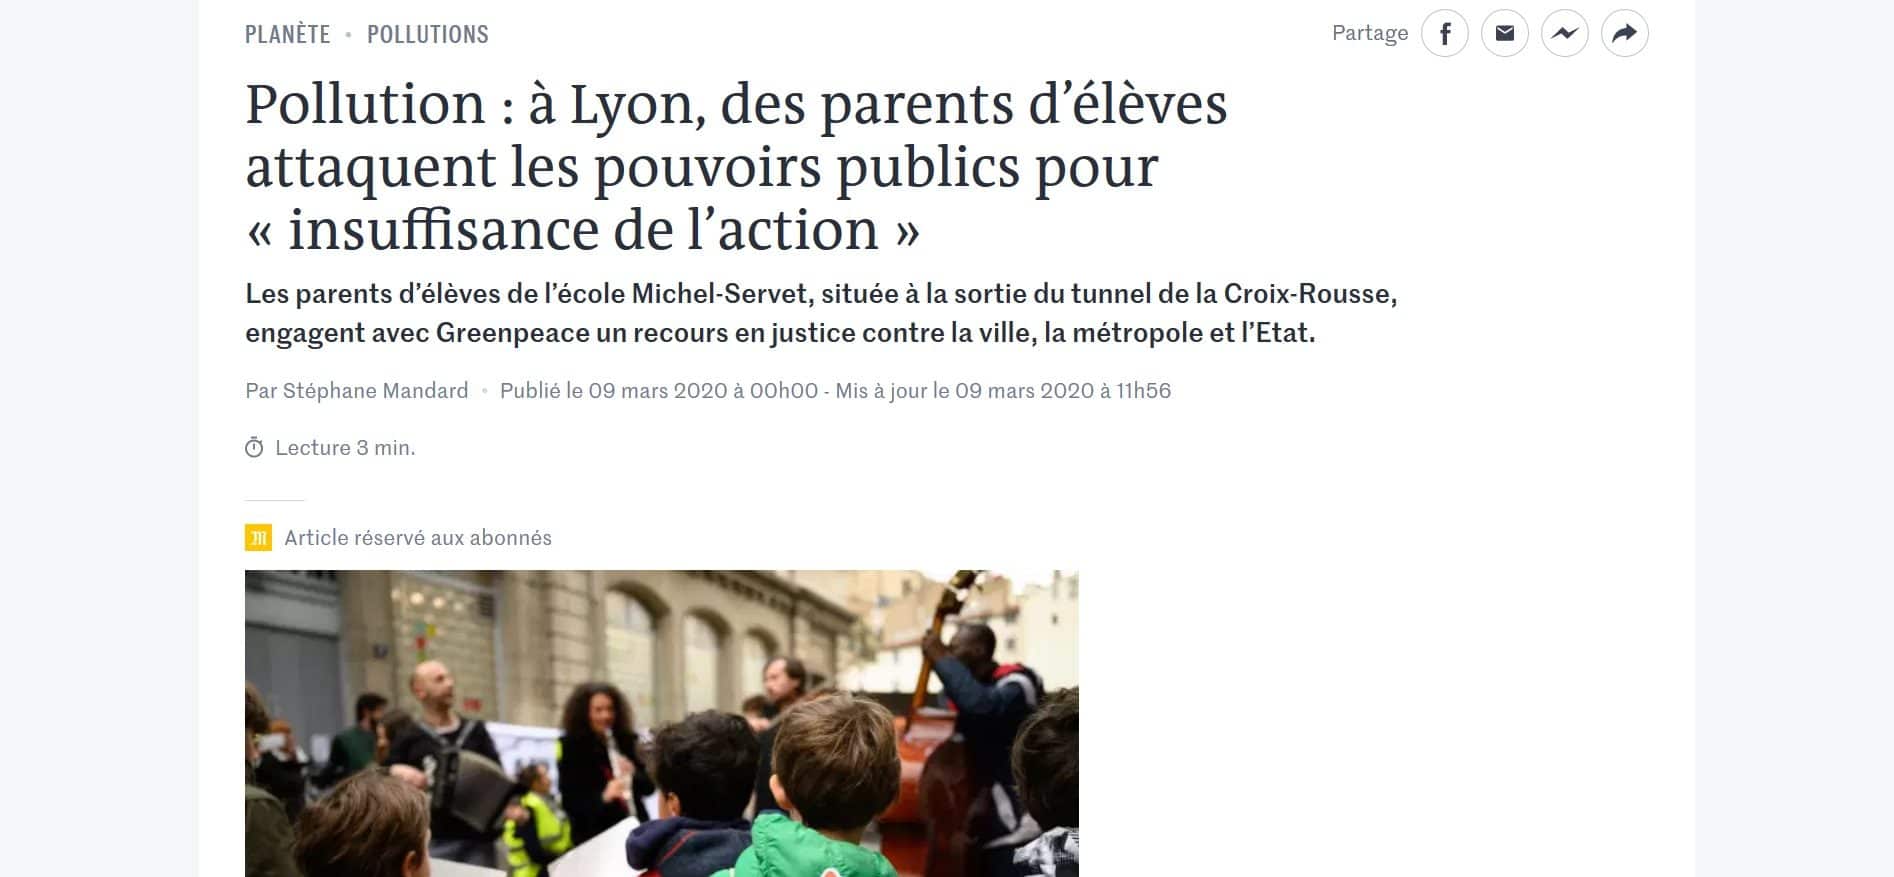 Capture d'écran d'un article du Monde sur la pollution de l'air dans une école à Lyon